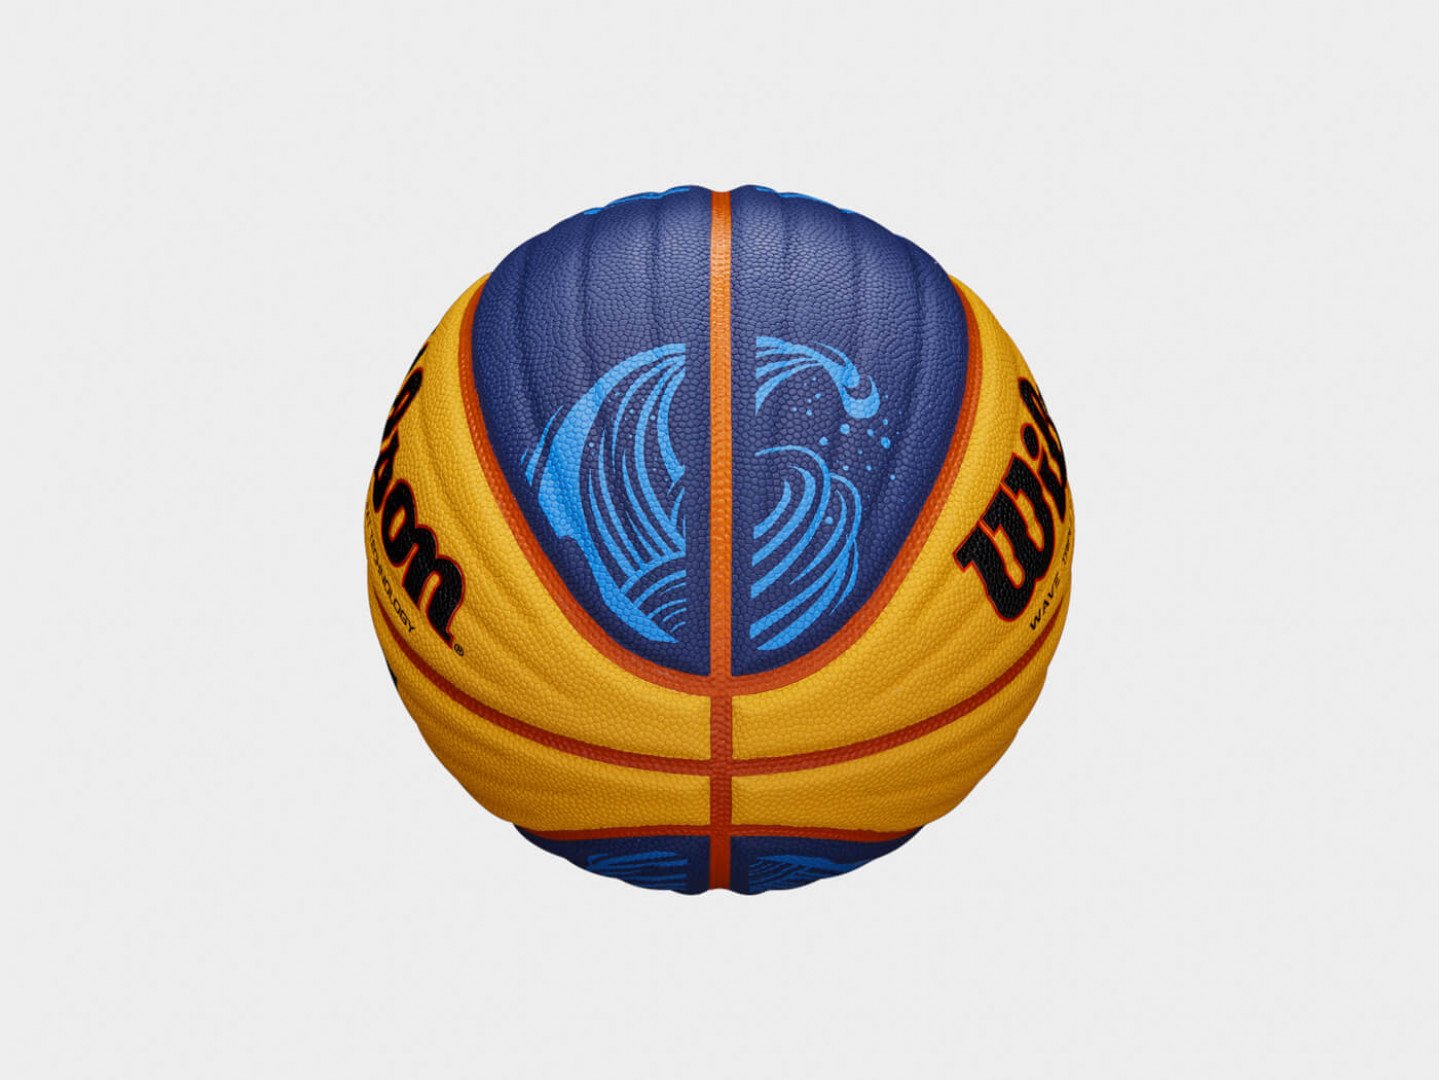  баскетбольный мяч Wilson FIBA 3x3 Official размер 6 в Астане